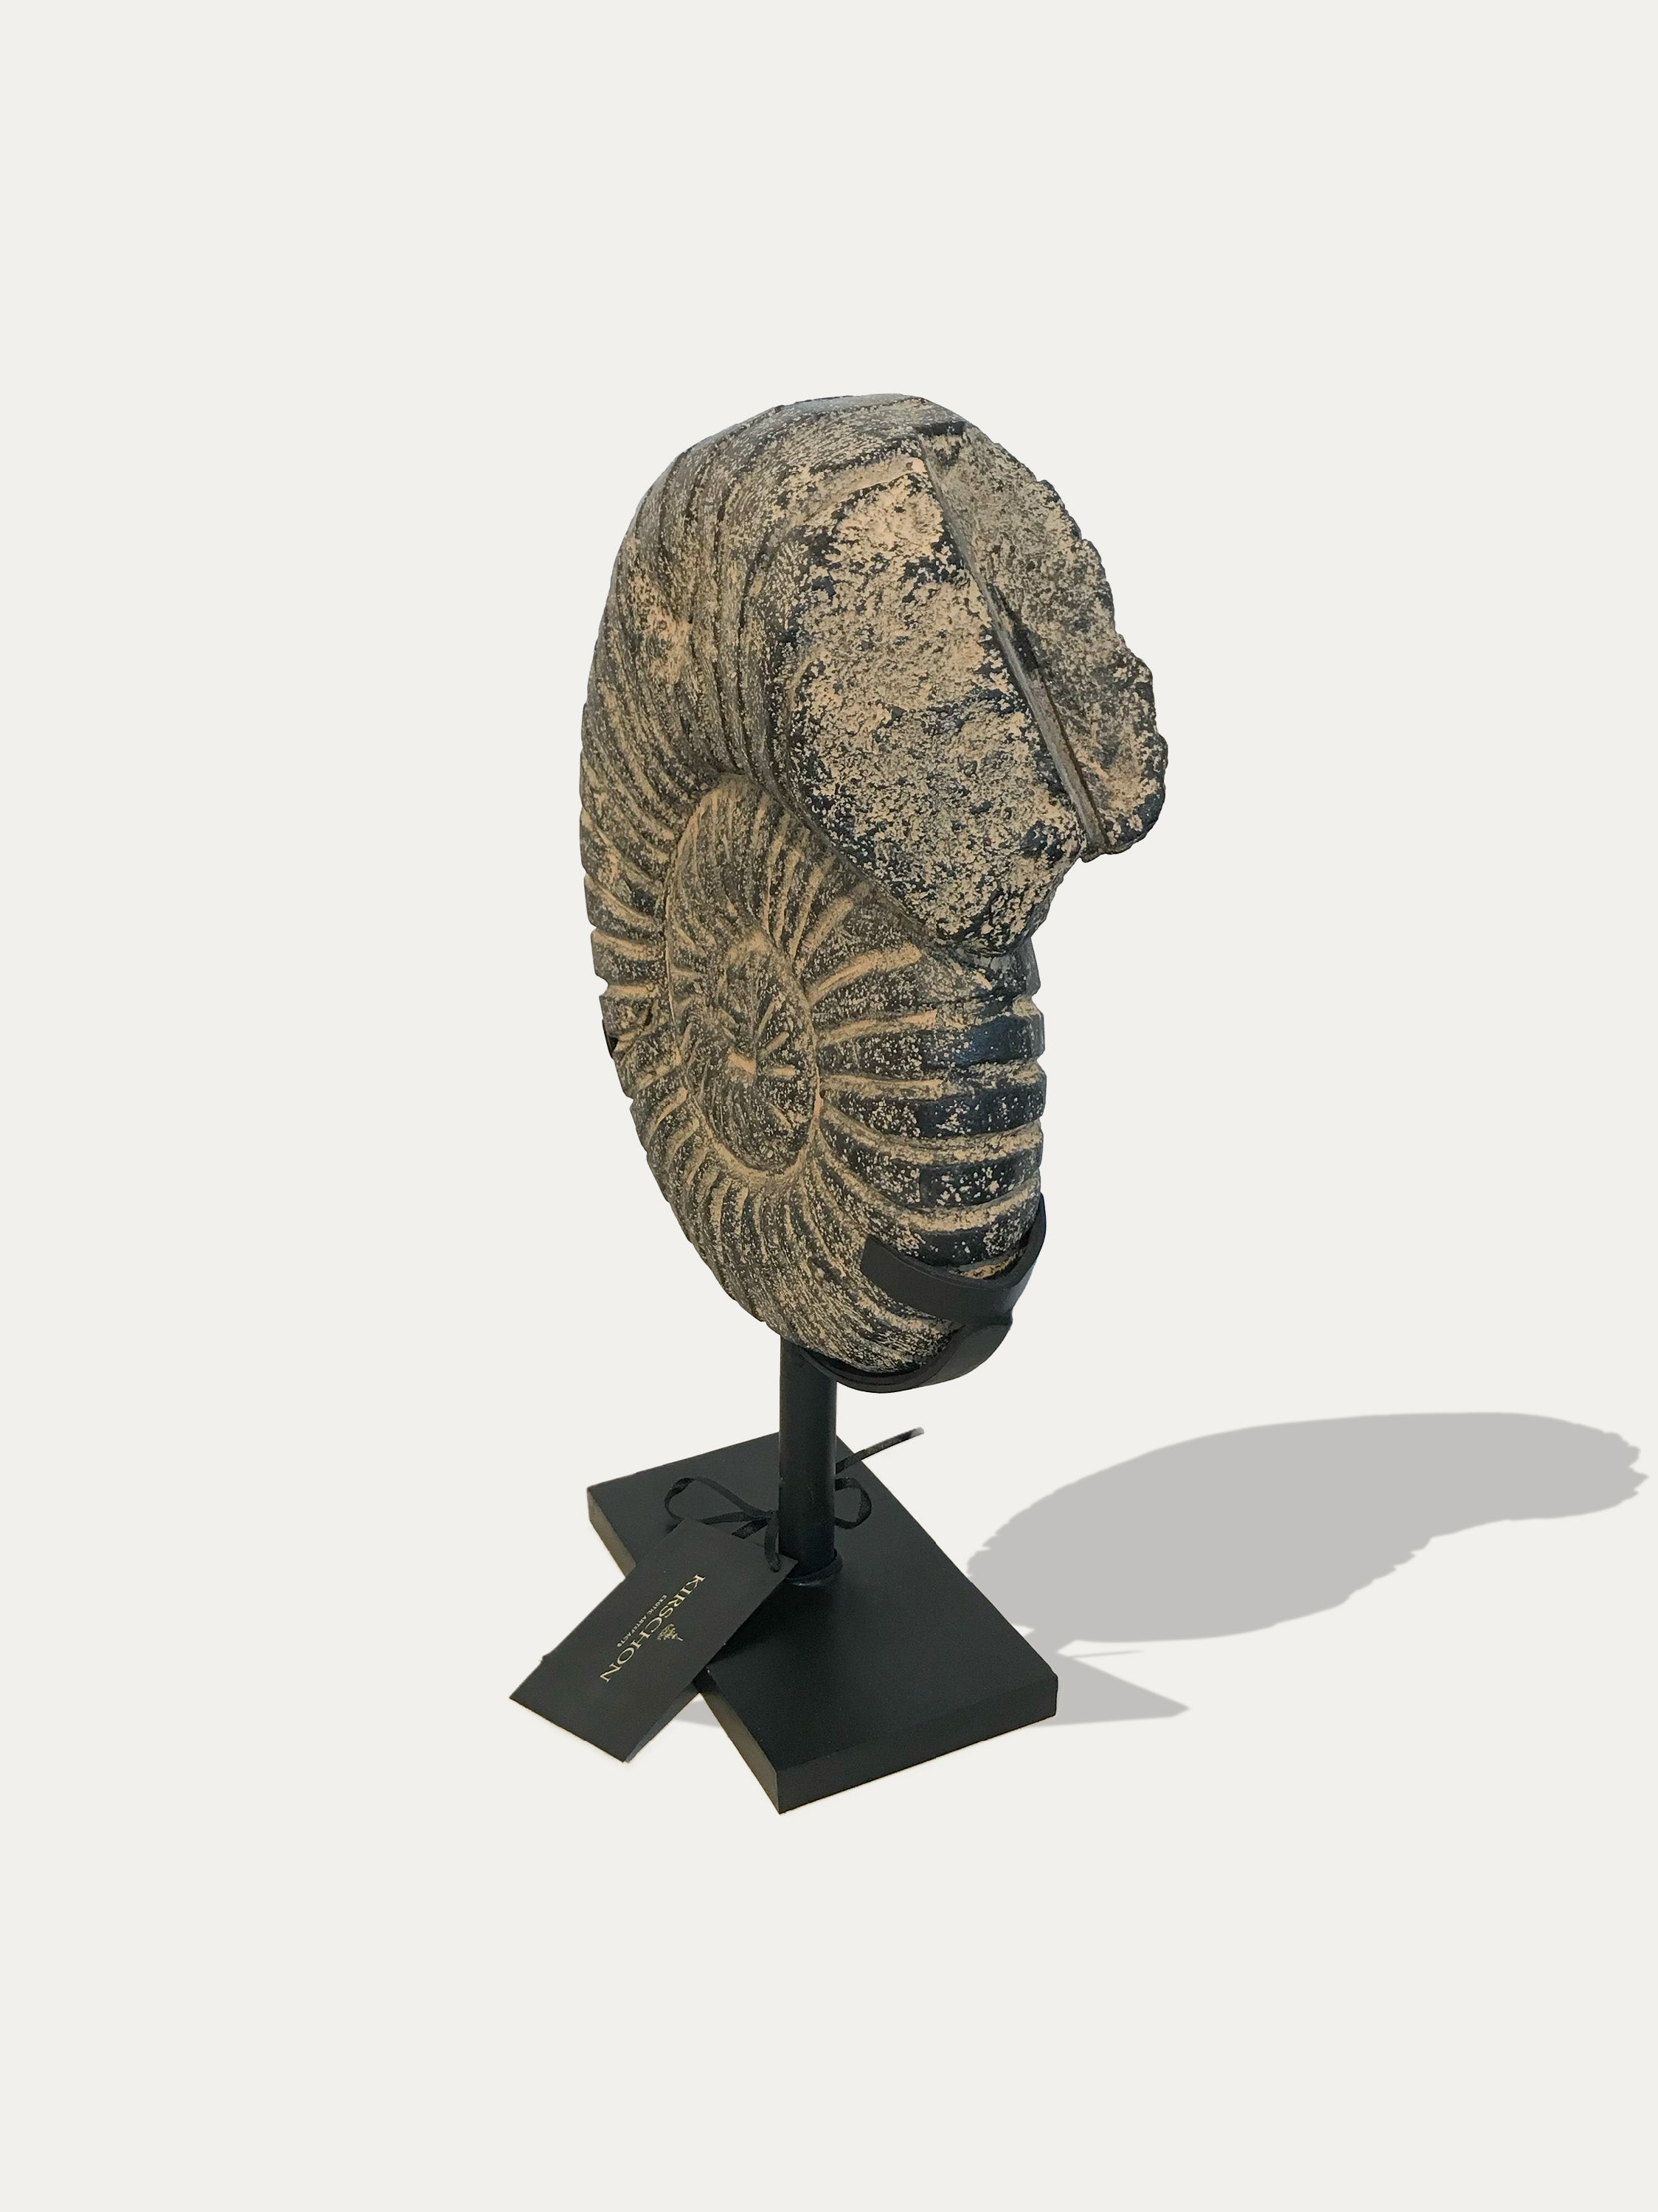 Statua in pietra di Ammonite dall'Isola di Giava